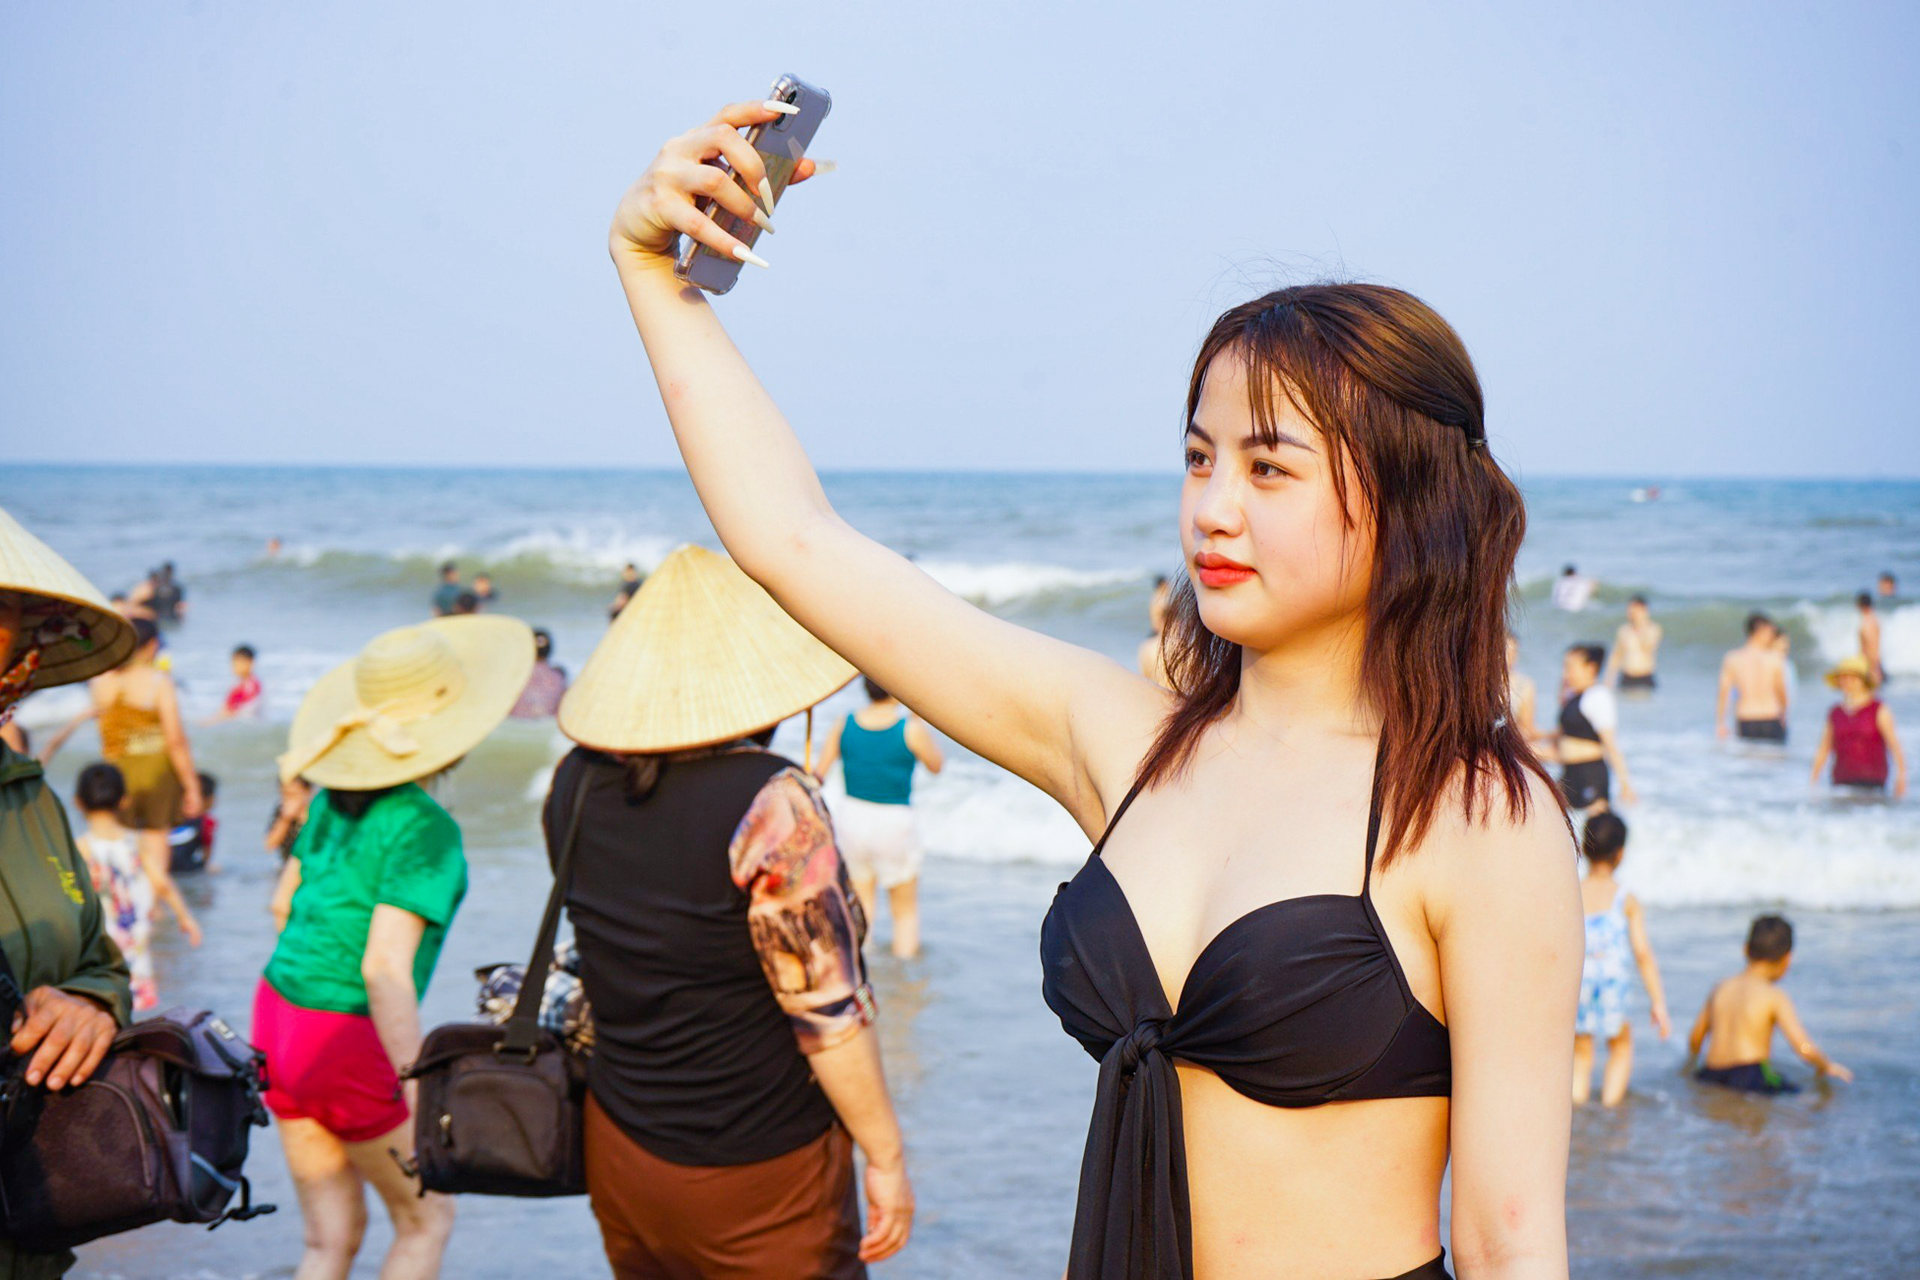 Vạn người đổ về bãi biển Sầm Sơn trong ngày nắng nóng đỉnh điểm - 4